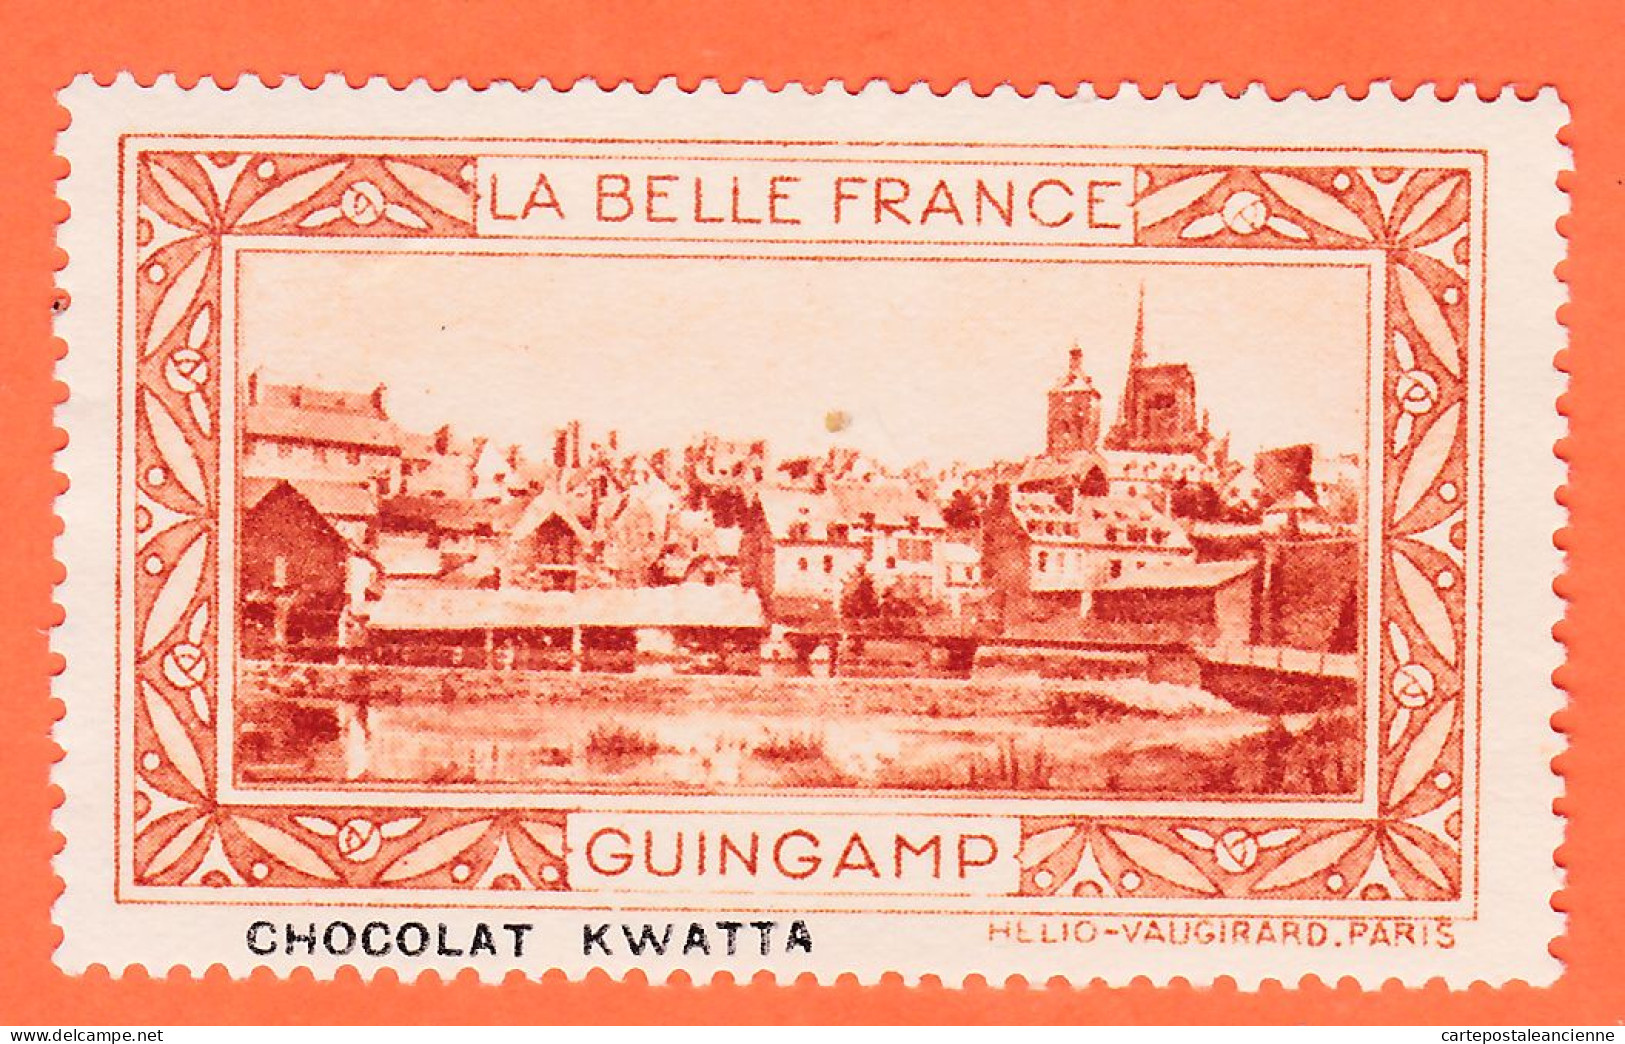 00158 ● GUINGAMP 22-Cotes Armor Pub Chocolat KWATTA Vignette Collection BELLE FRANCE HELIO-VAUGIRARD Erinnophilie - Tourism (Labels)